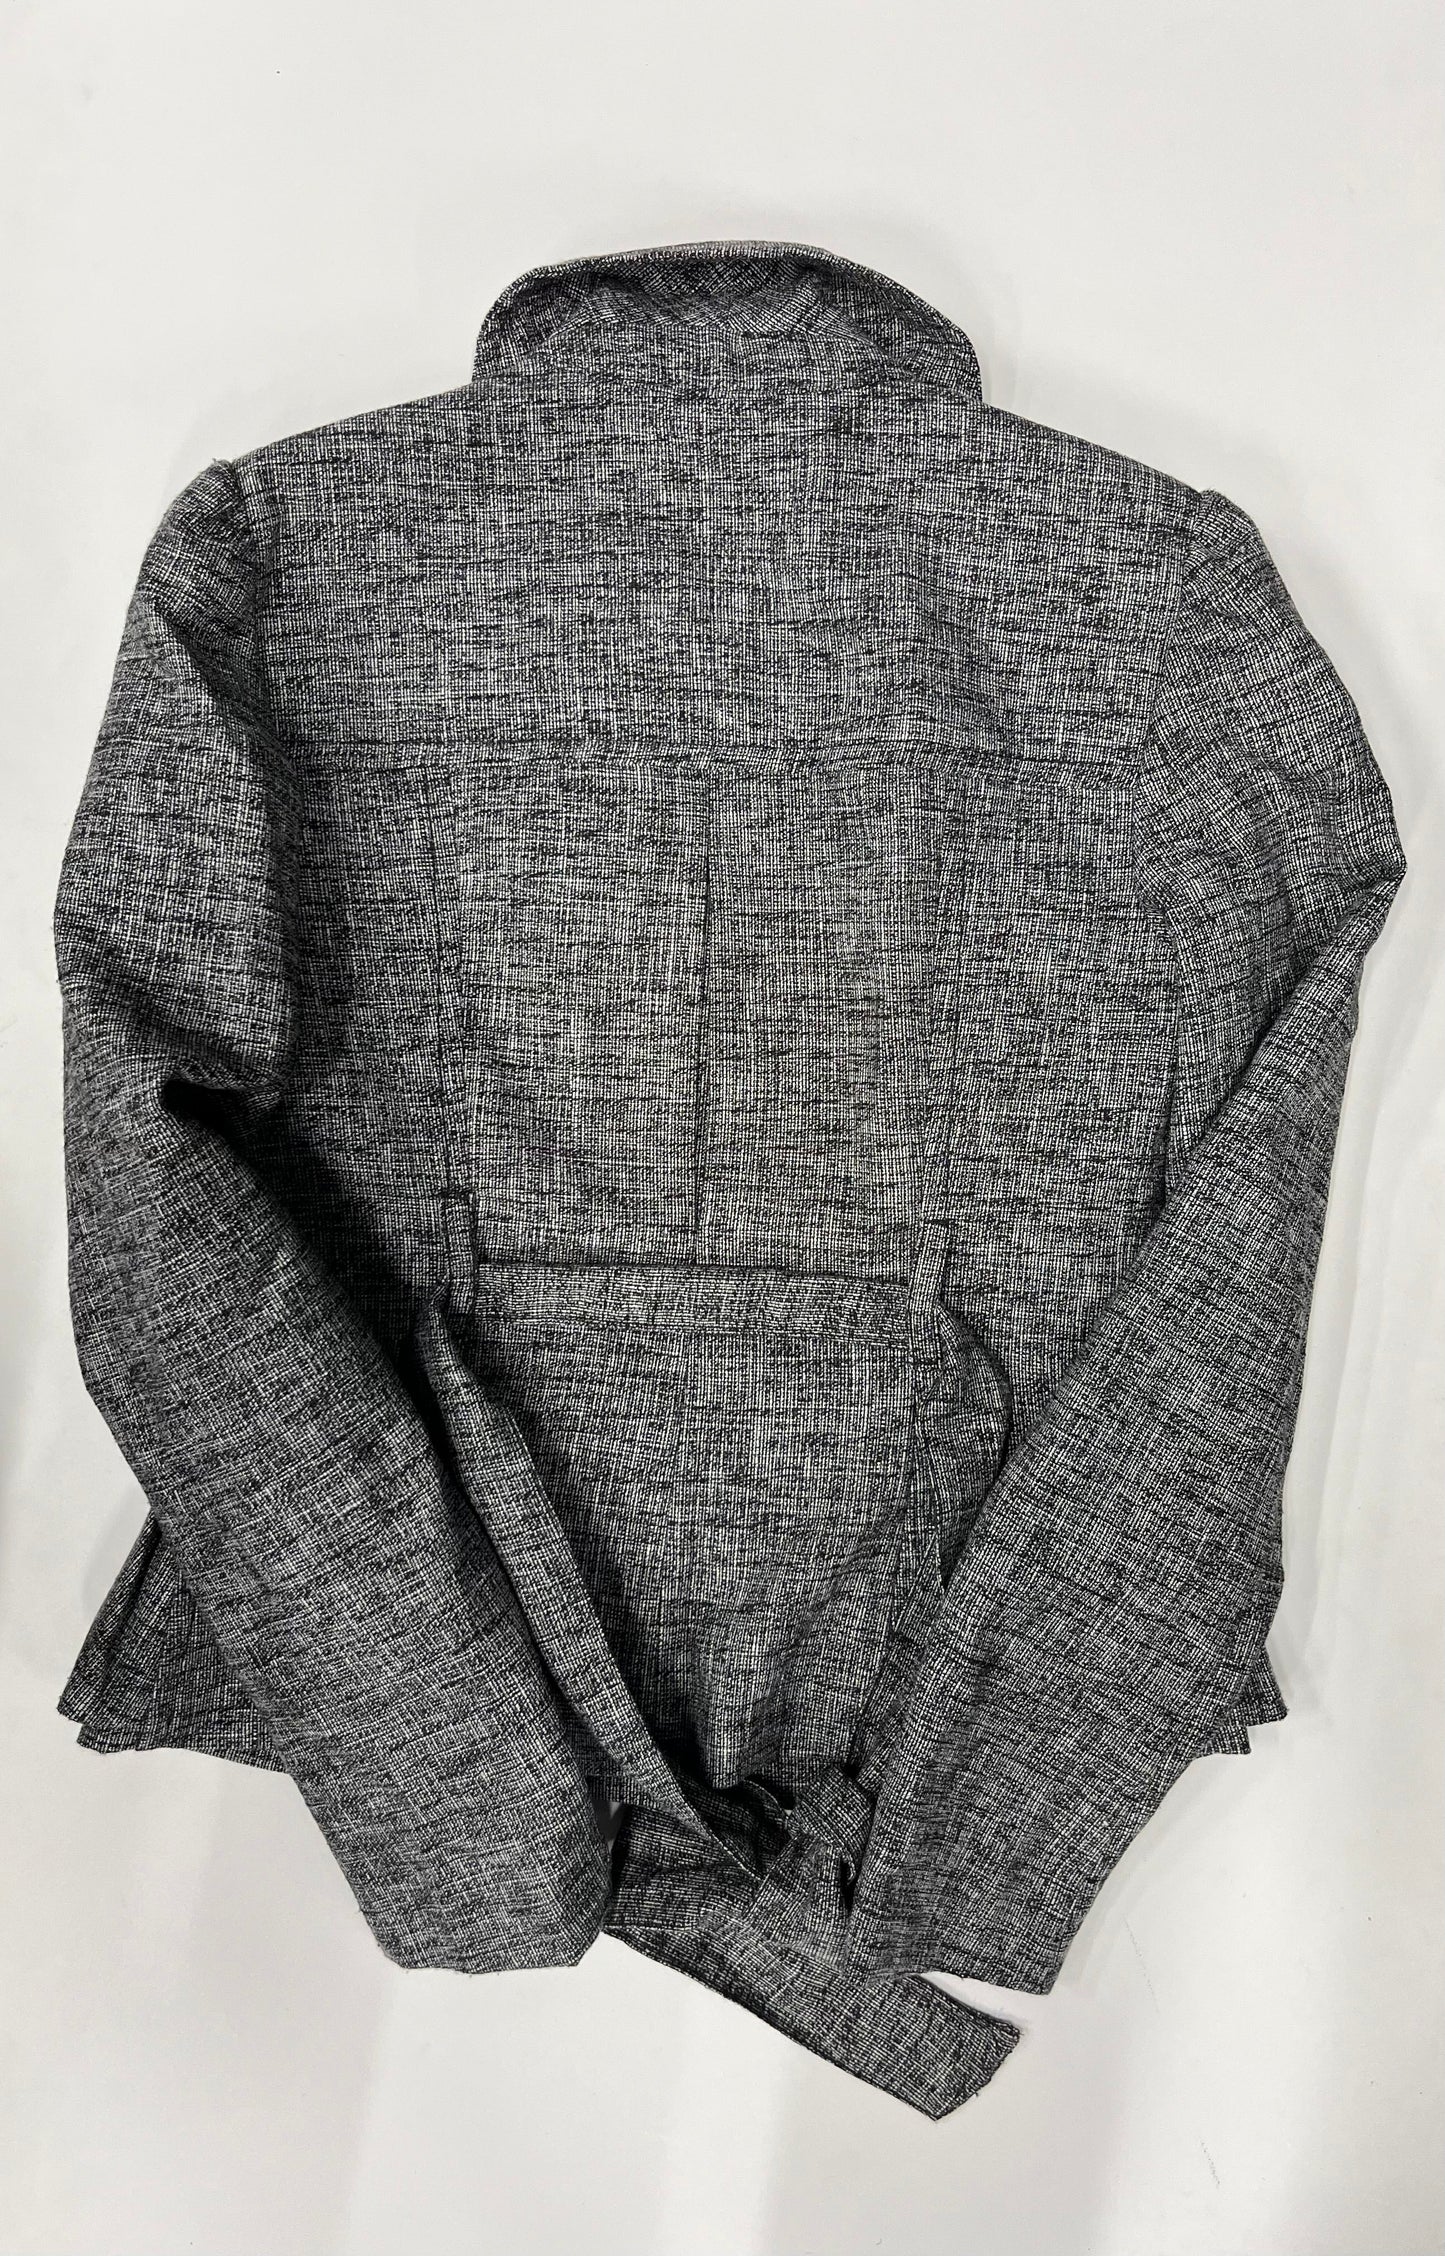 Blazer Jacket By Ann Taylor Loft O NWT Size: 0